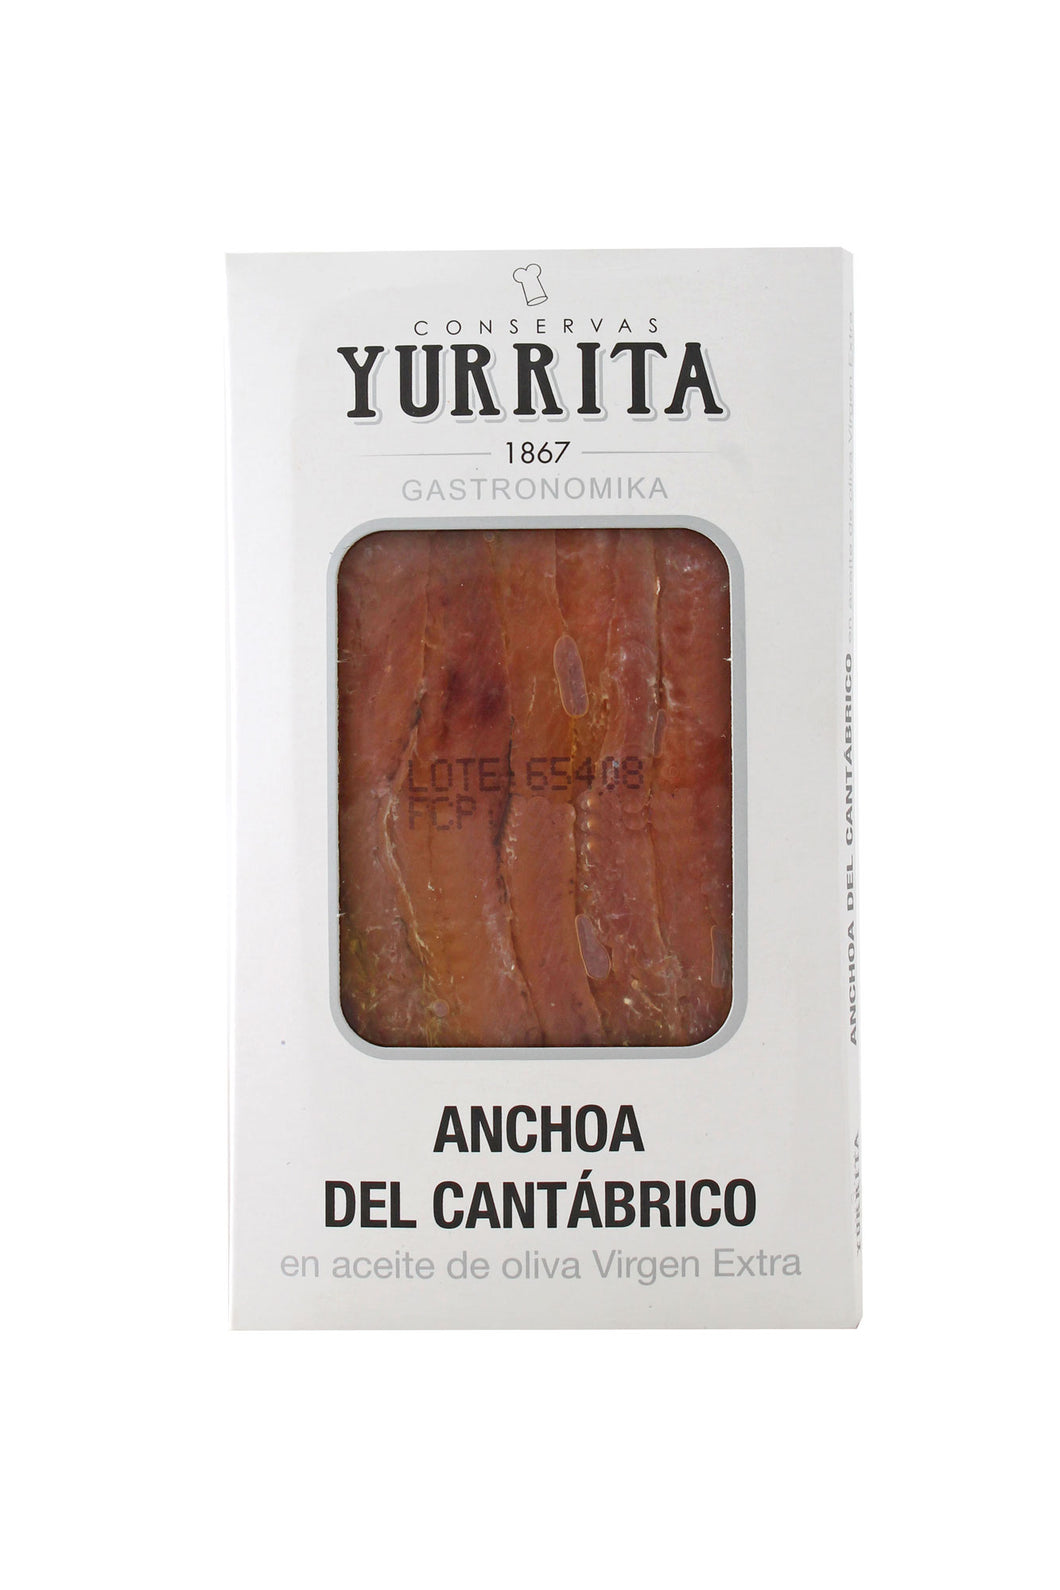 Yurrita anchois anchoas de cantabrie del cantabrico